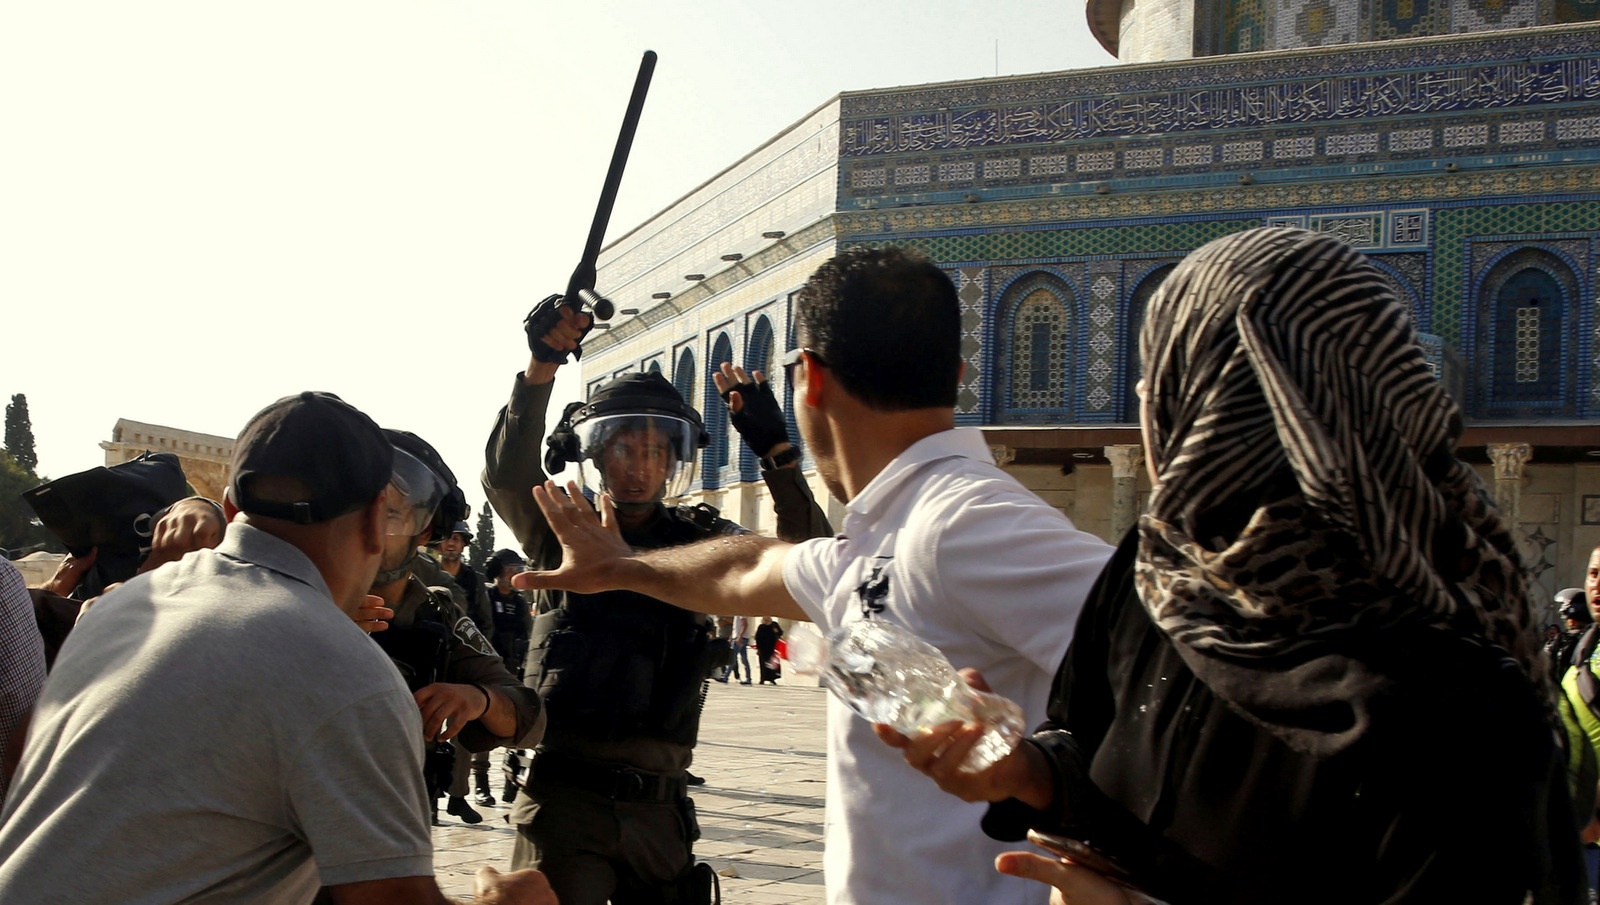 Un policier israélien lève sa matraque sur les fidèles Palestiniens près de la mosquée Al Aqsa dans la vieille ville de Jérusalem, le 27 juillet 2017. Mahmoud Illean / AP 